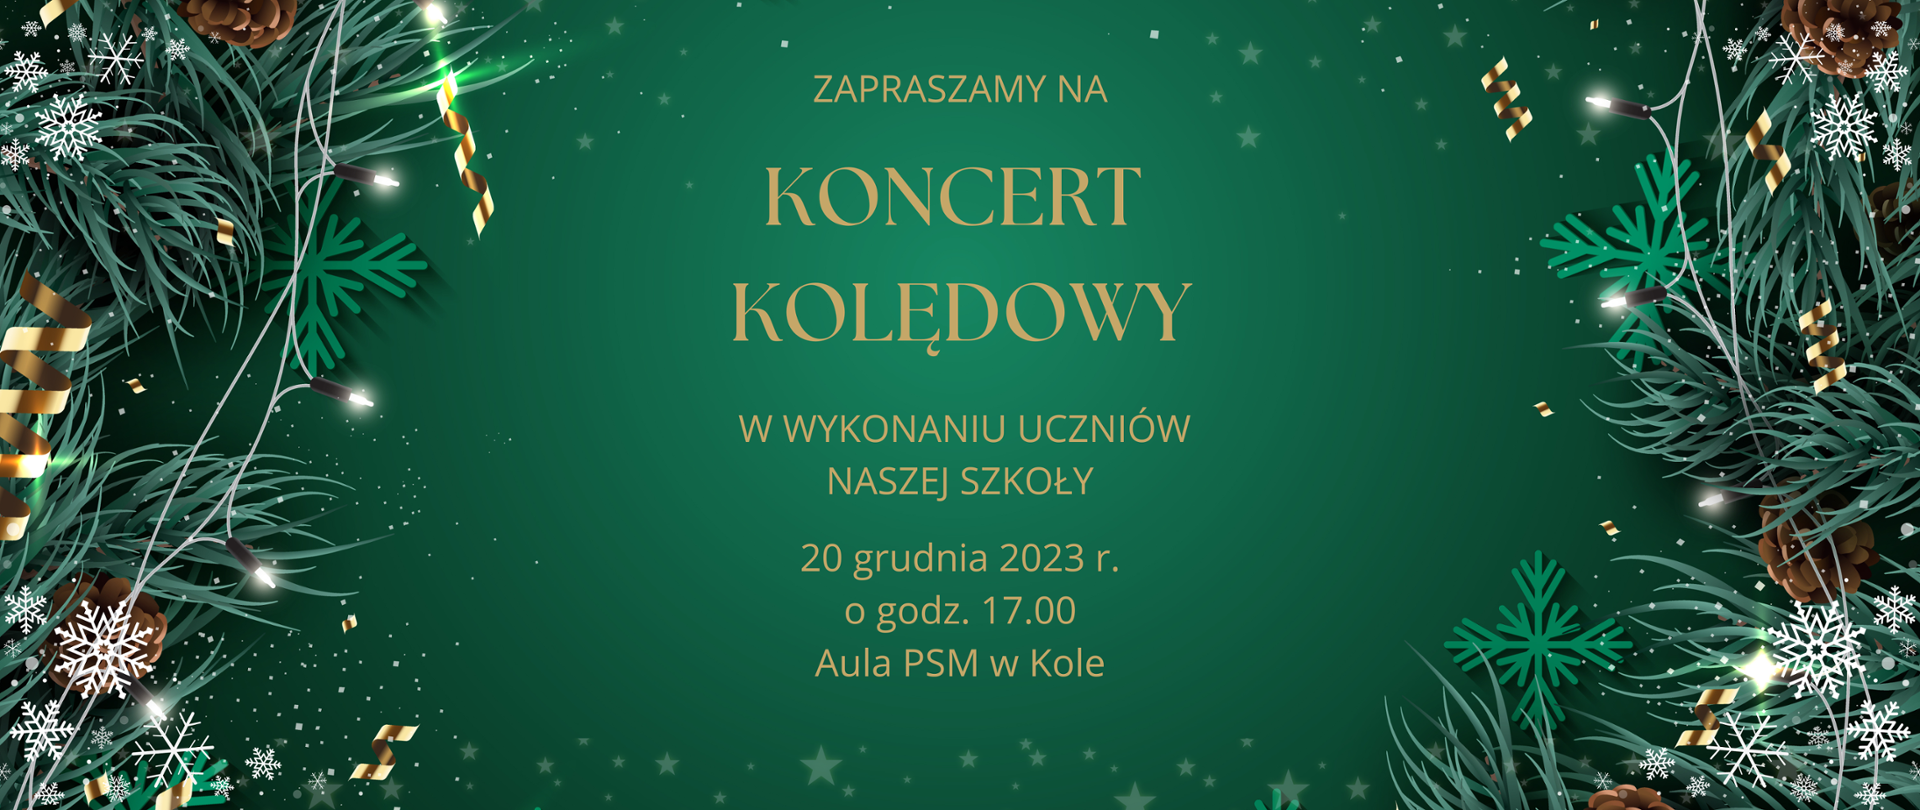 zaproszenie na koncert kolędowy w wykonaniu uczniów naszej szkoły 20 grudnia 2023 godzina 17,00 Aula PSM I stopnia w Kole, litery na zielonym świątecznym tle